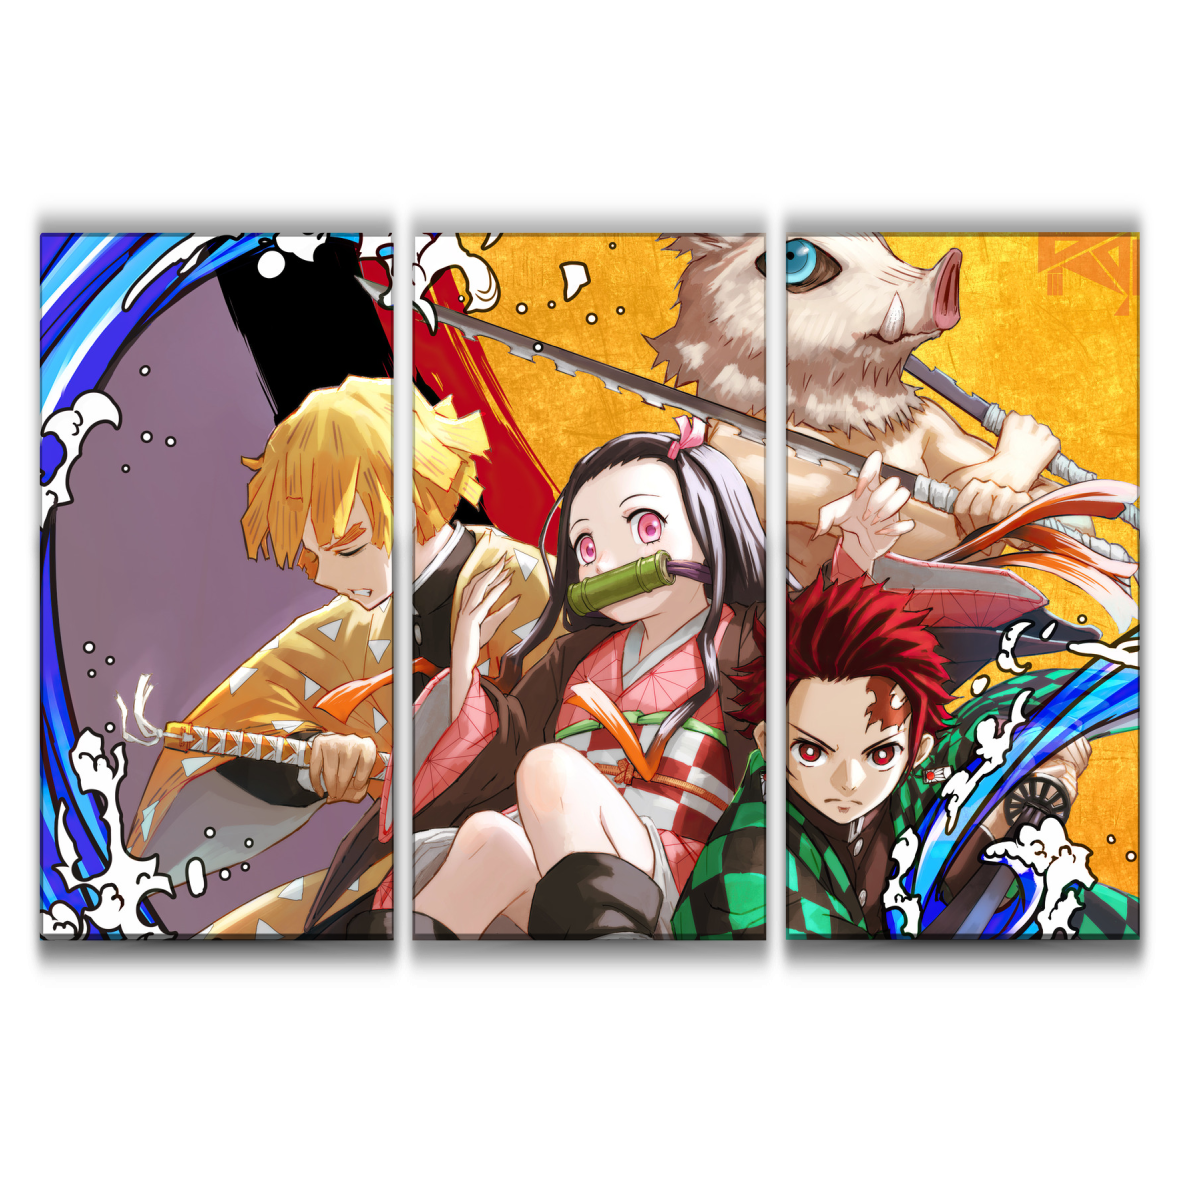 Tanjiro, Zenitsu, Inosuke and Nezuko Anime Poster